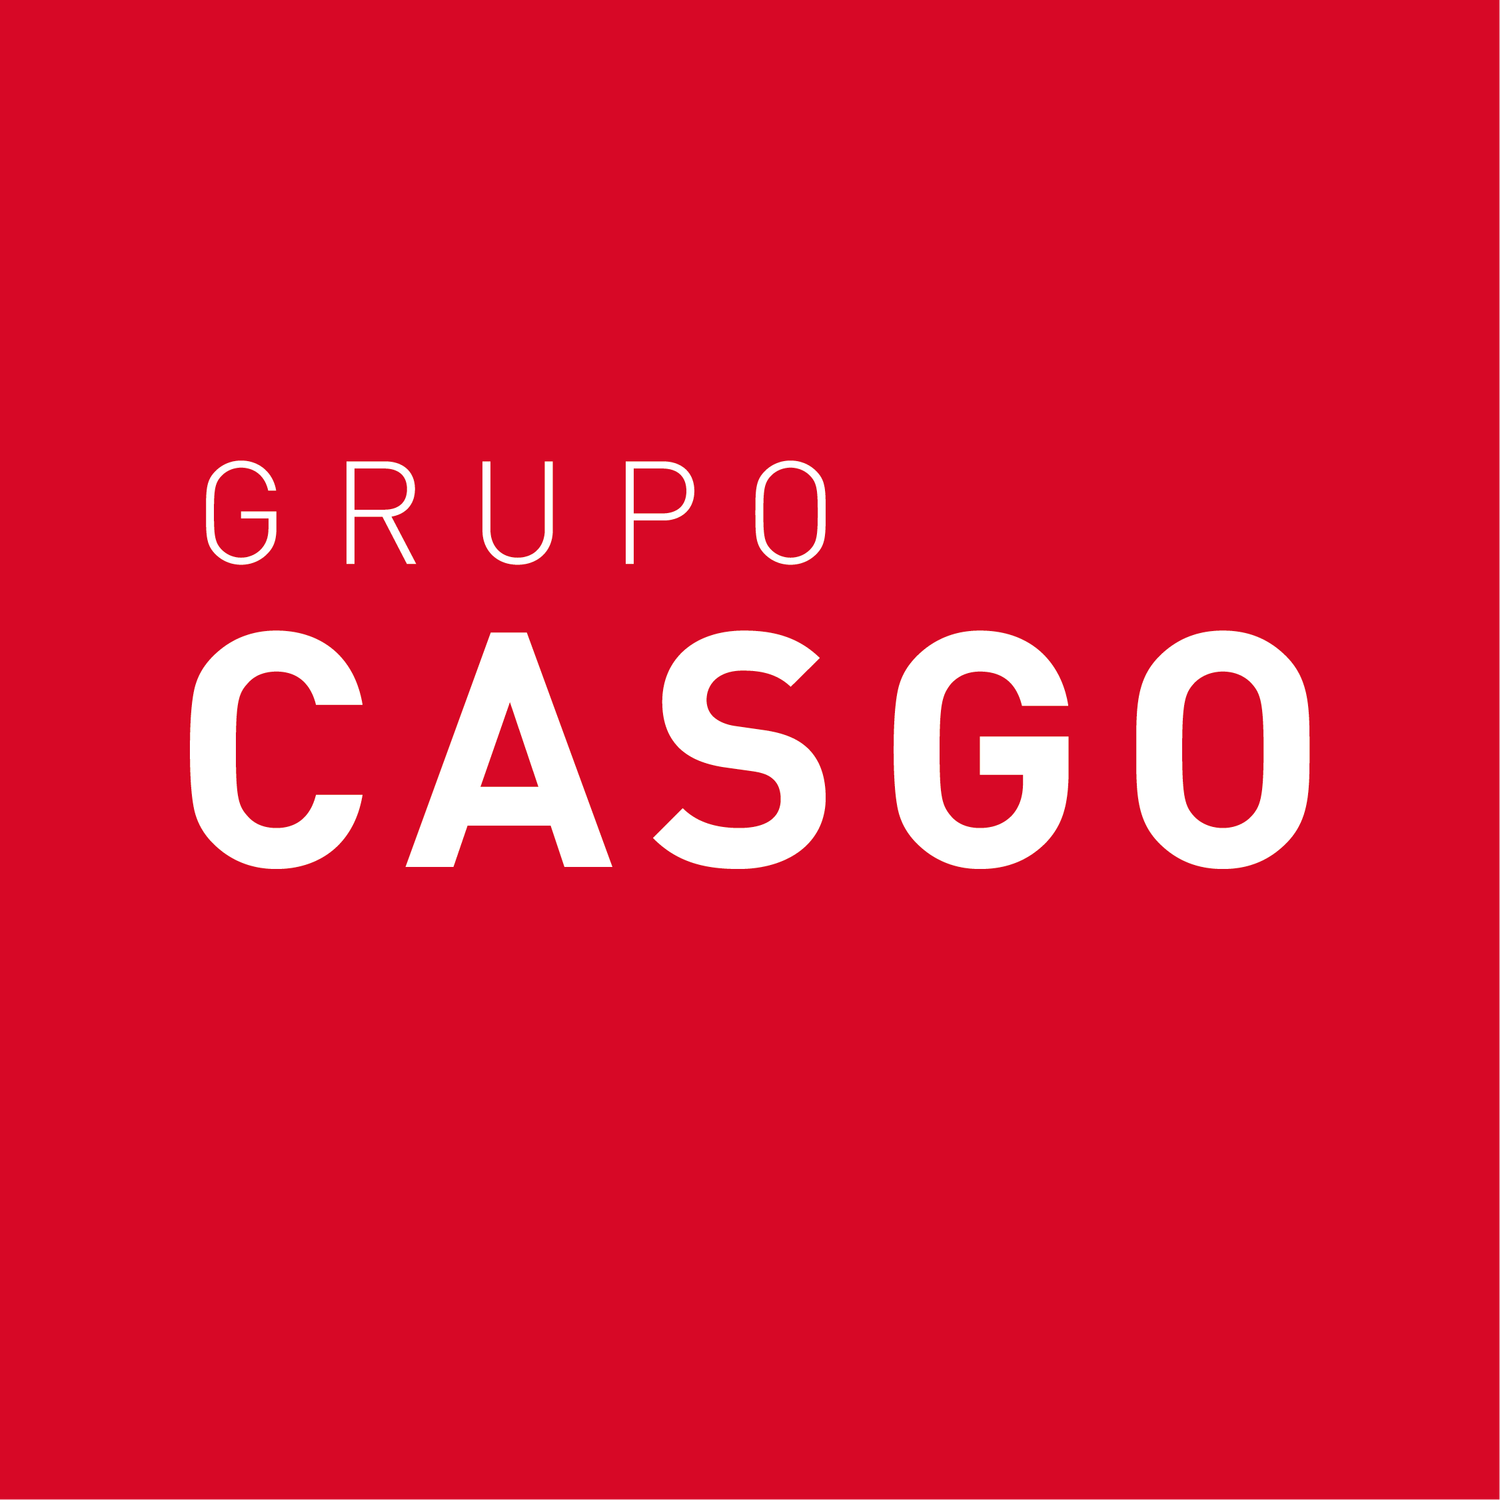 Grupo Casgo